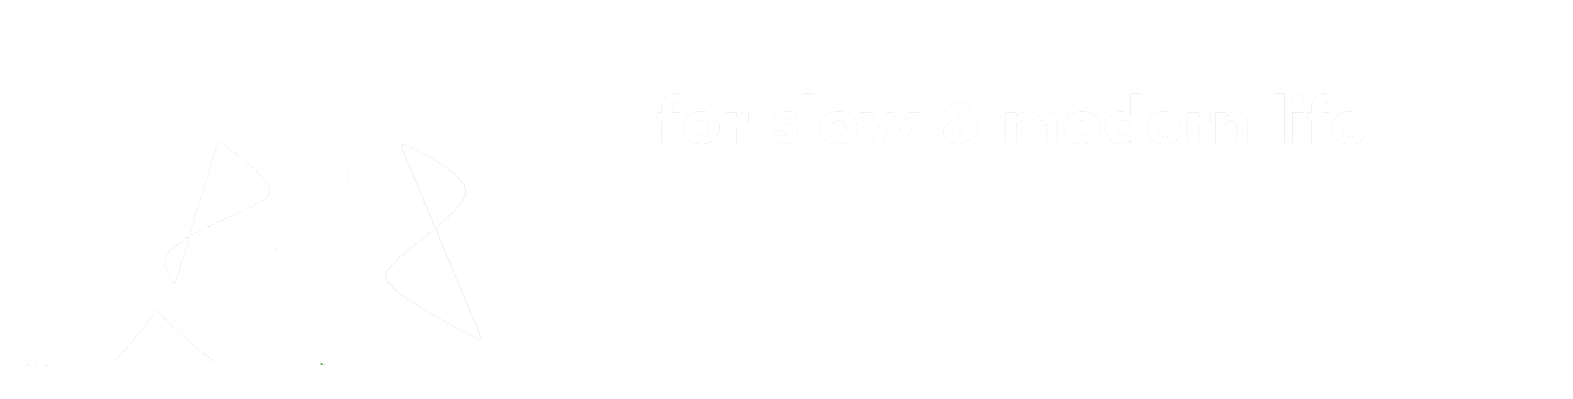 Rokko Base K9